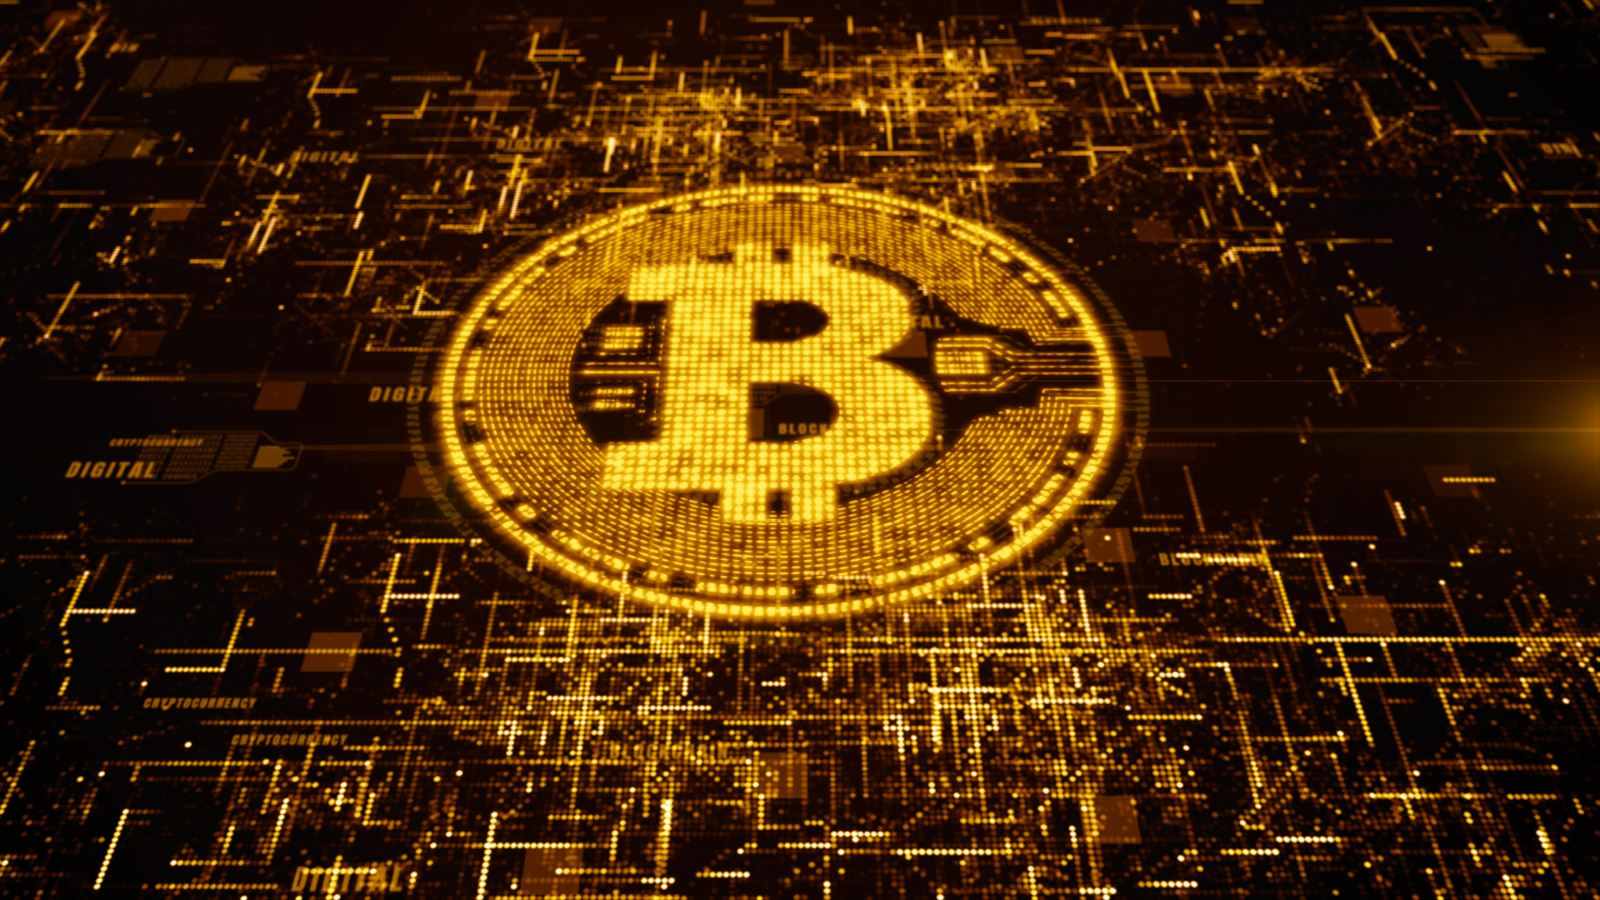 Blockchain Bitcoin